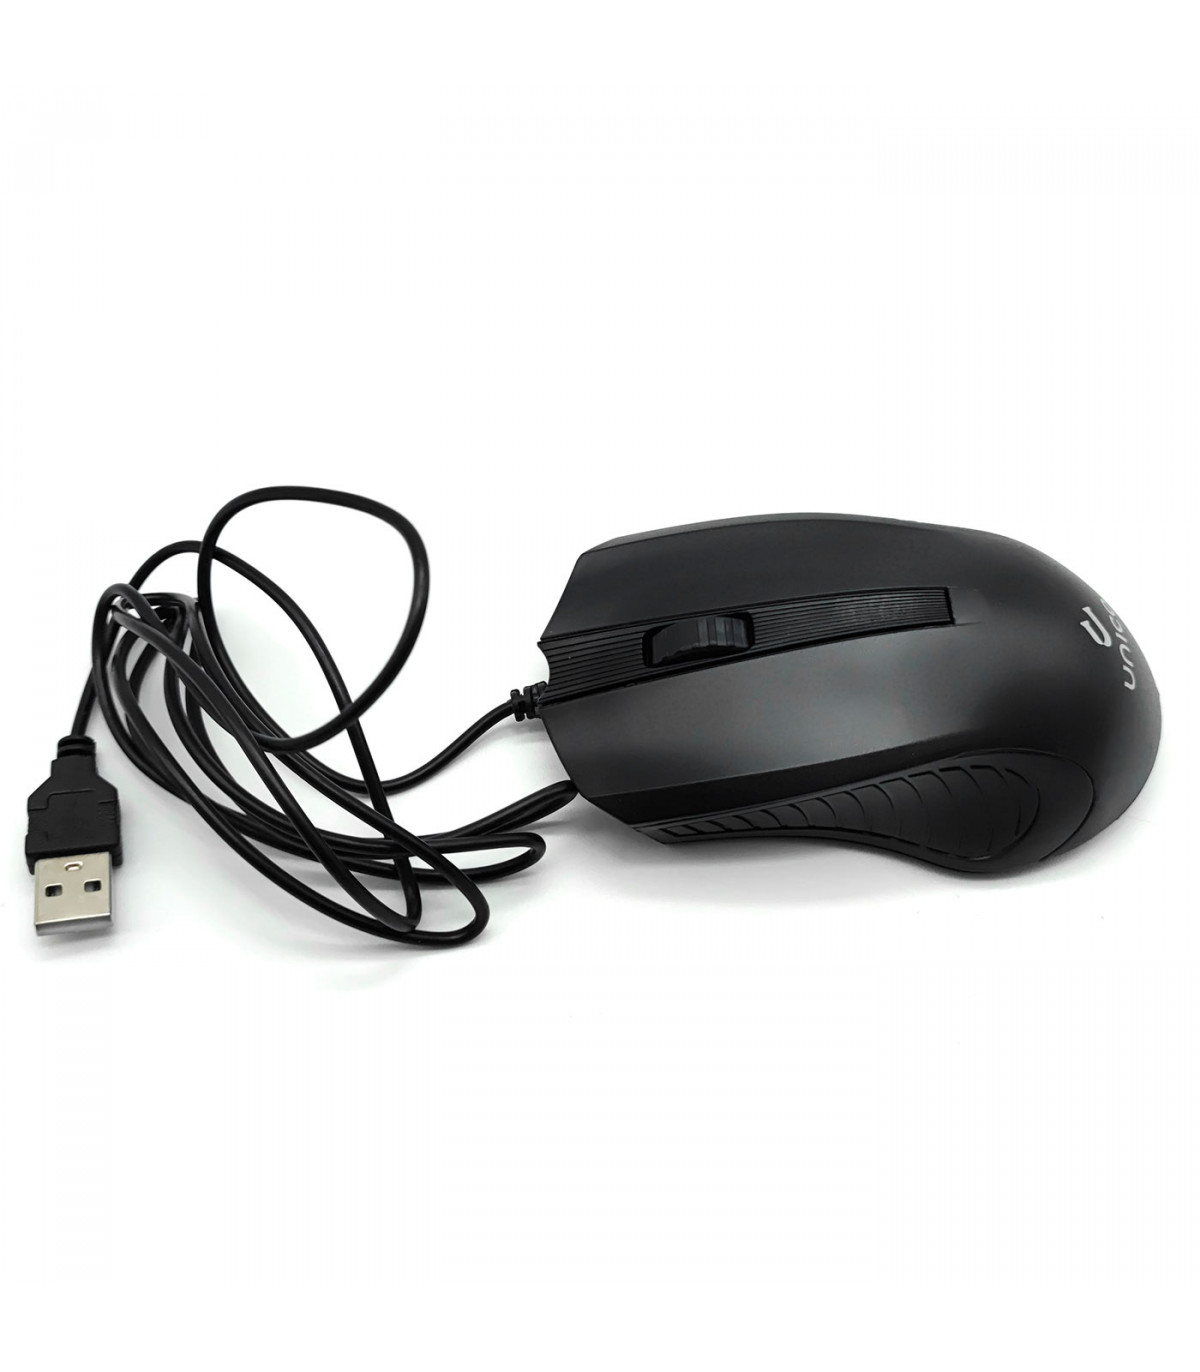 plplaaoo Ratón con cable USB de 3 niveles ajustable, negro, ergonómico,  1600 DPI, con cable para Windows para sistema OS X, computadora portátil de